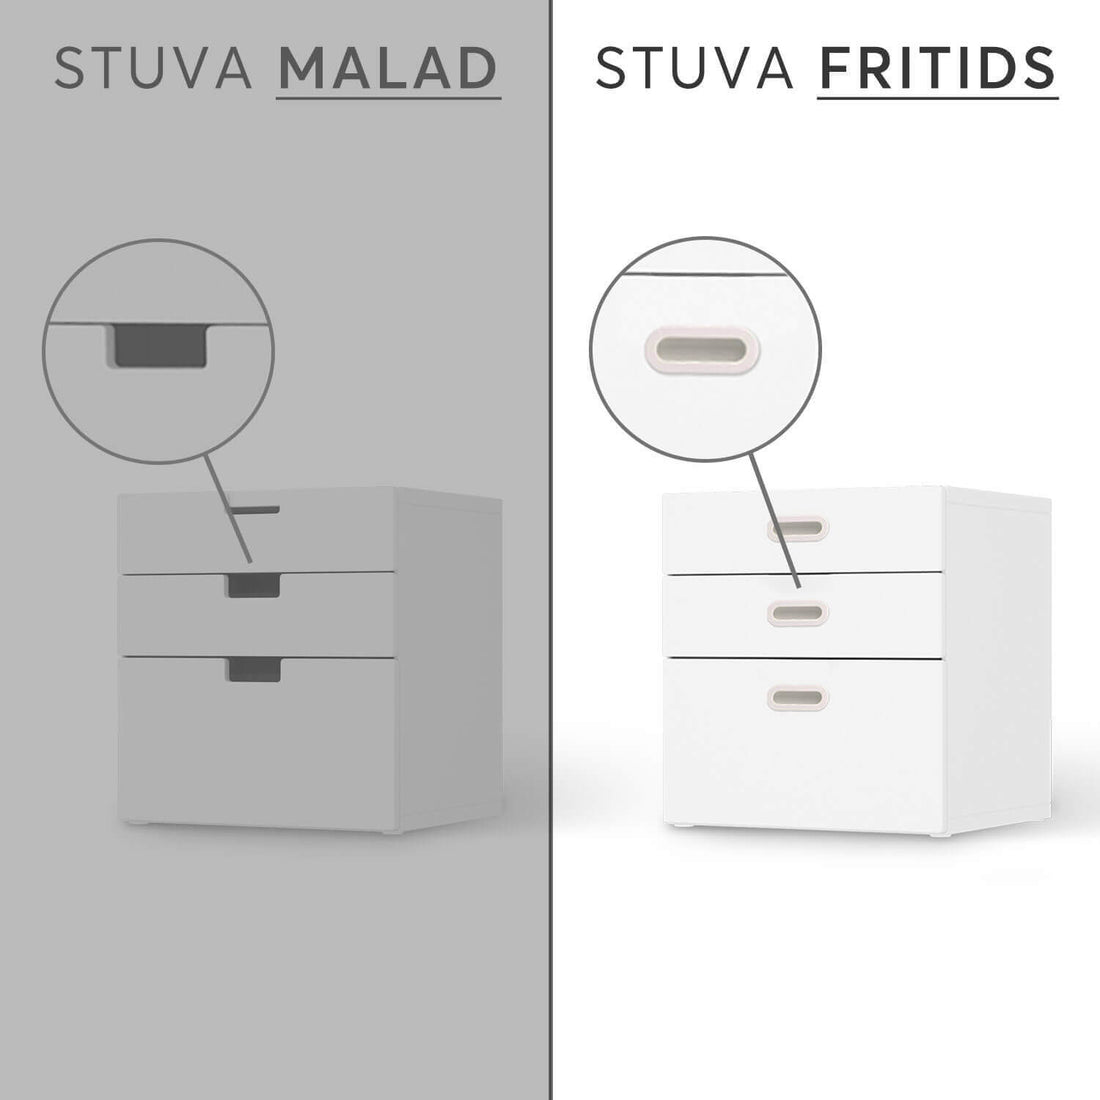 Vergleich IKEA Stuva Fritids / Malad - Green Tea Fields